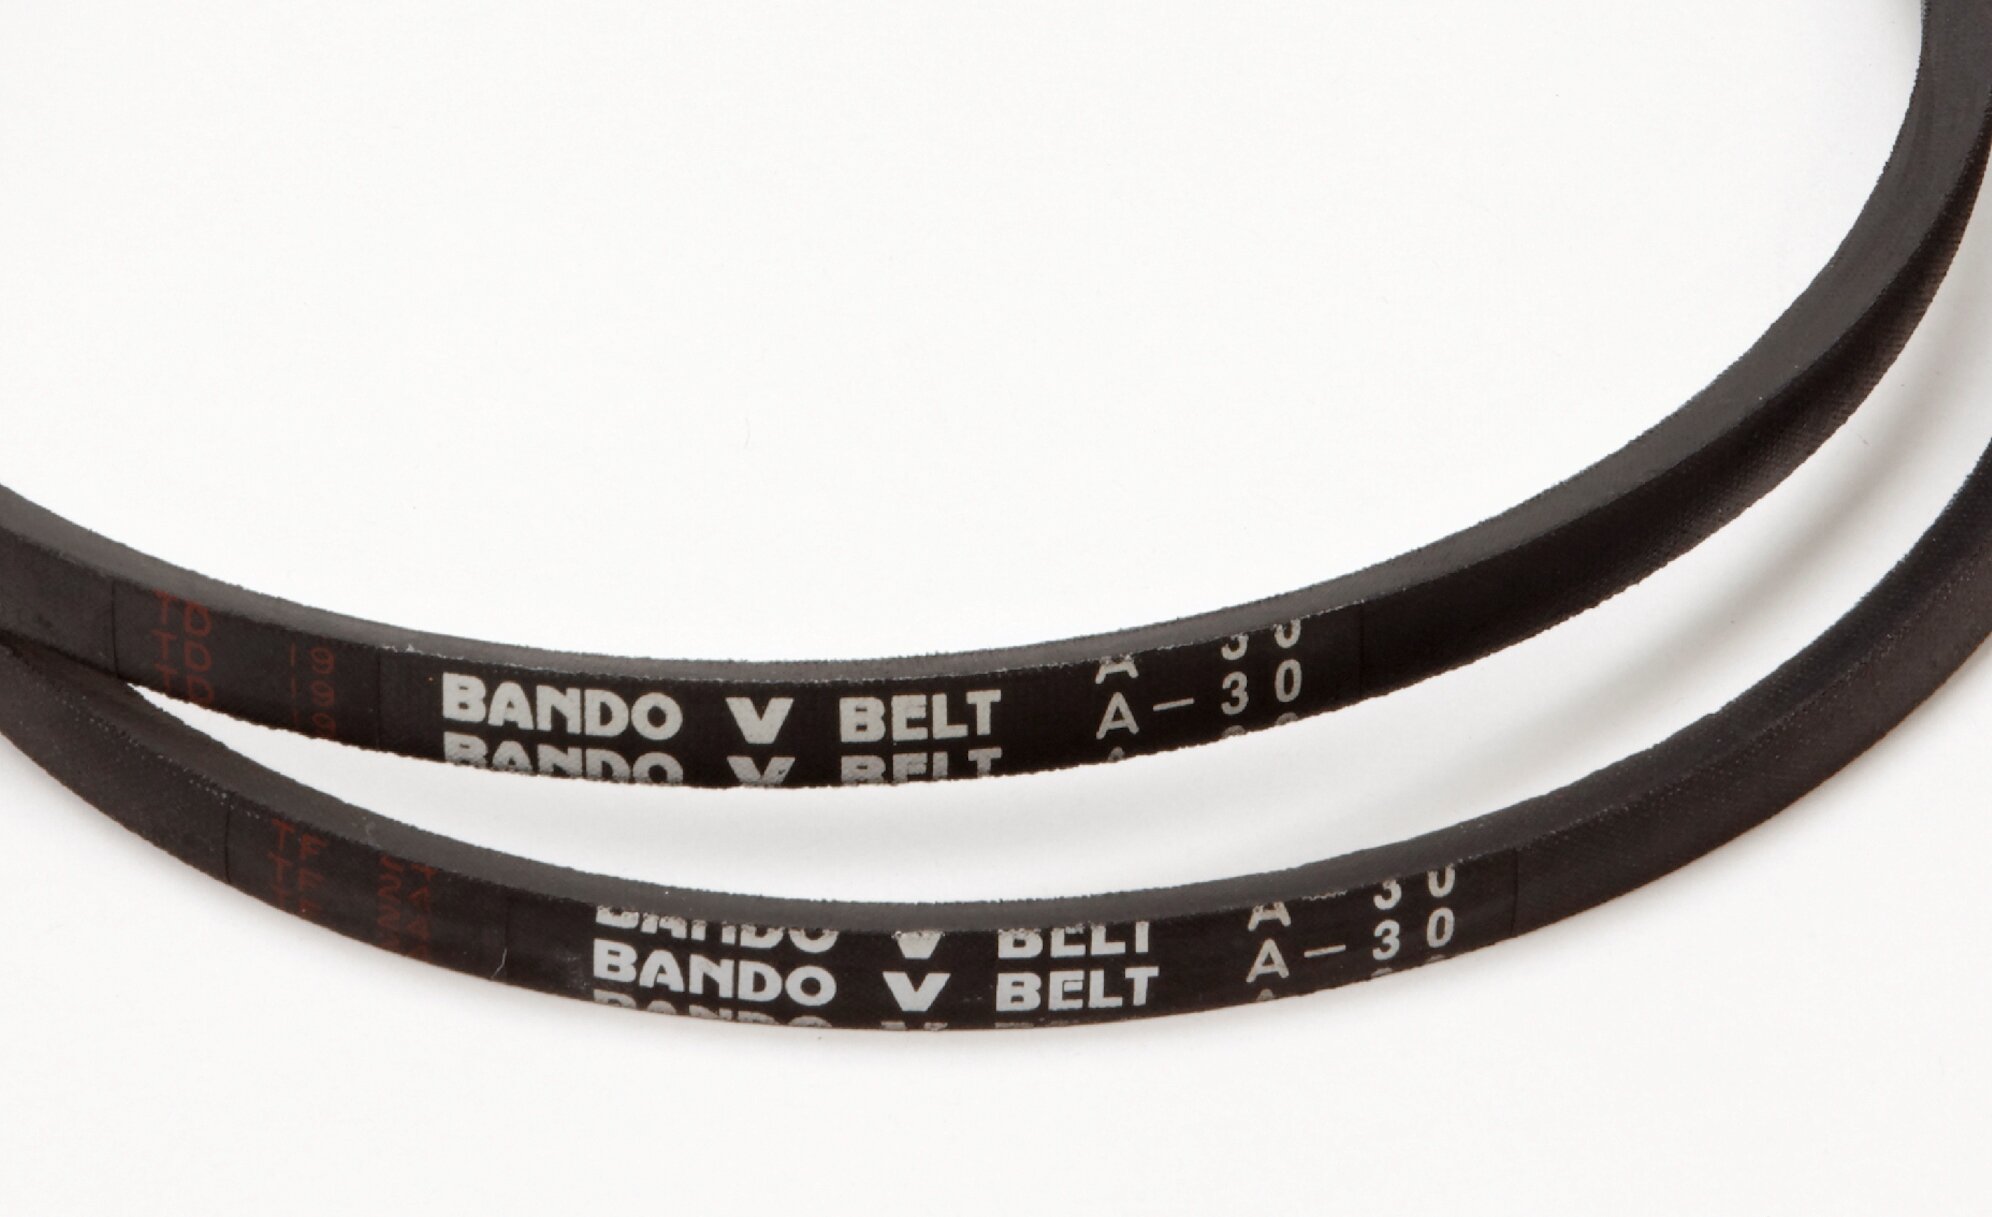 V-belt standard